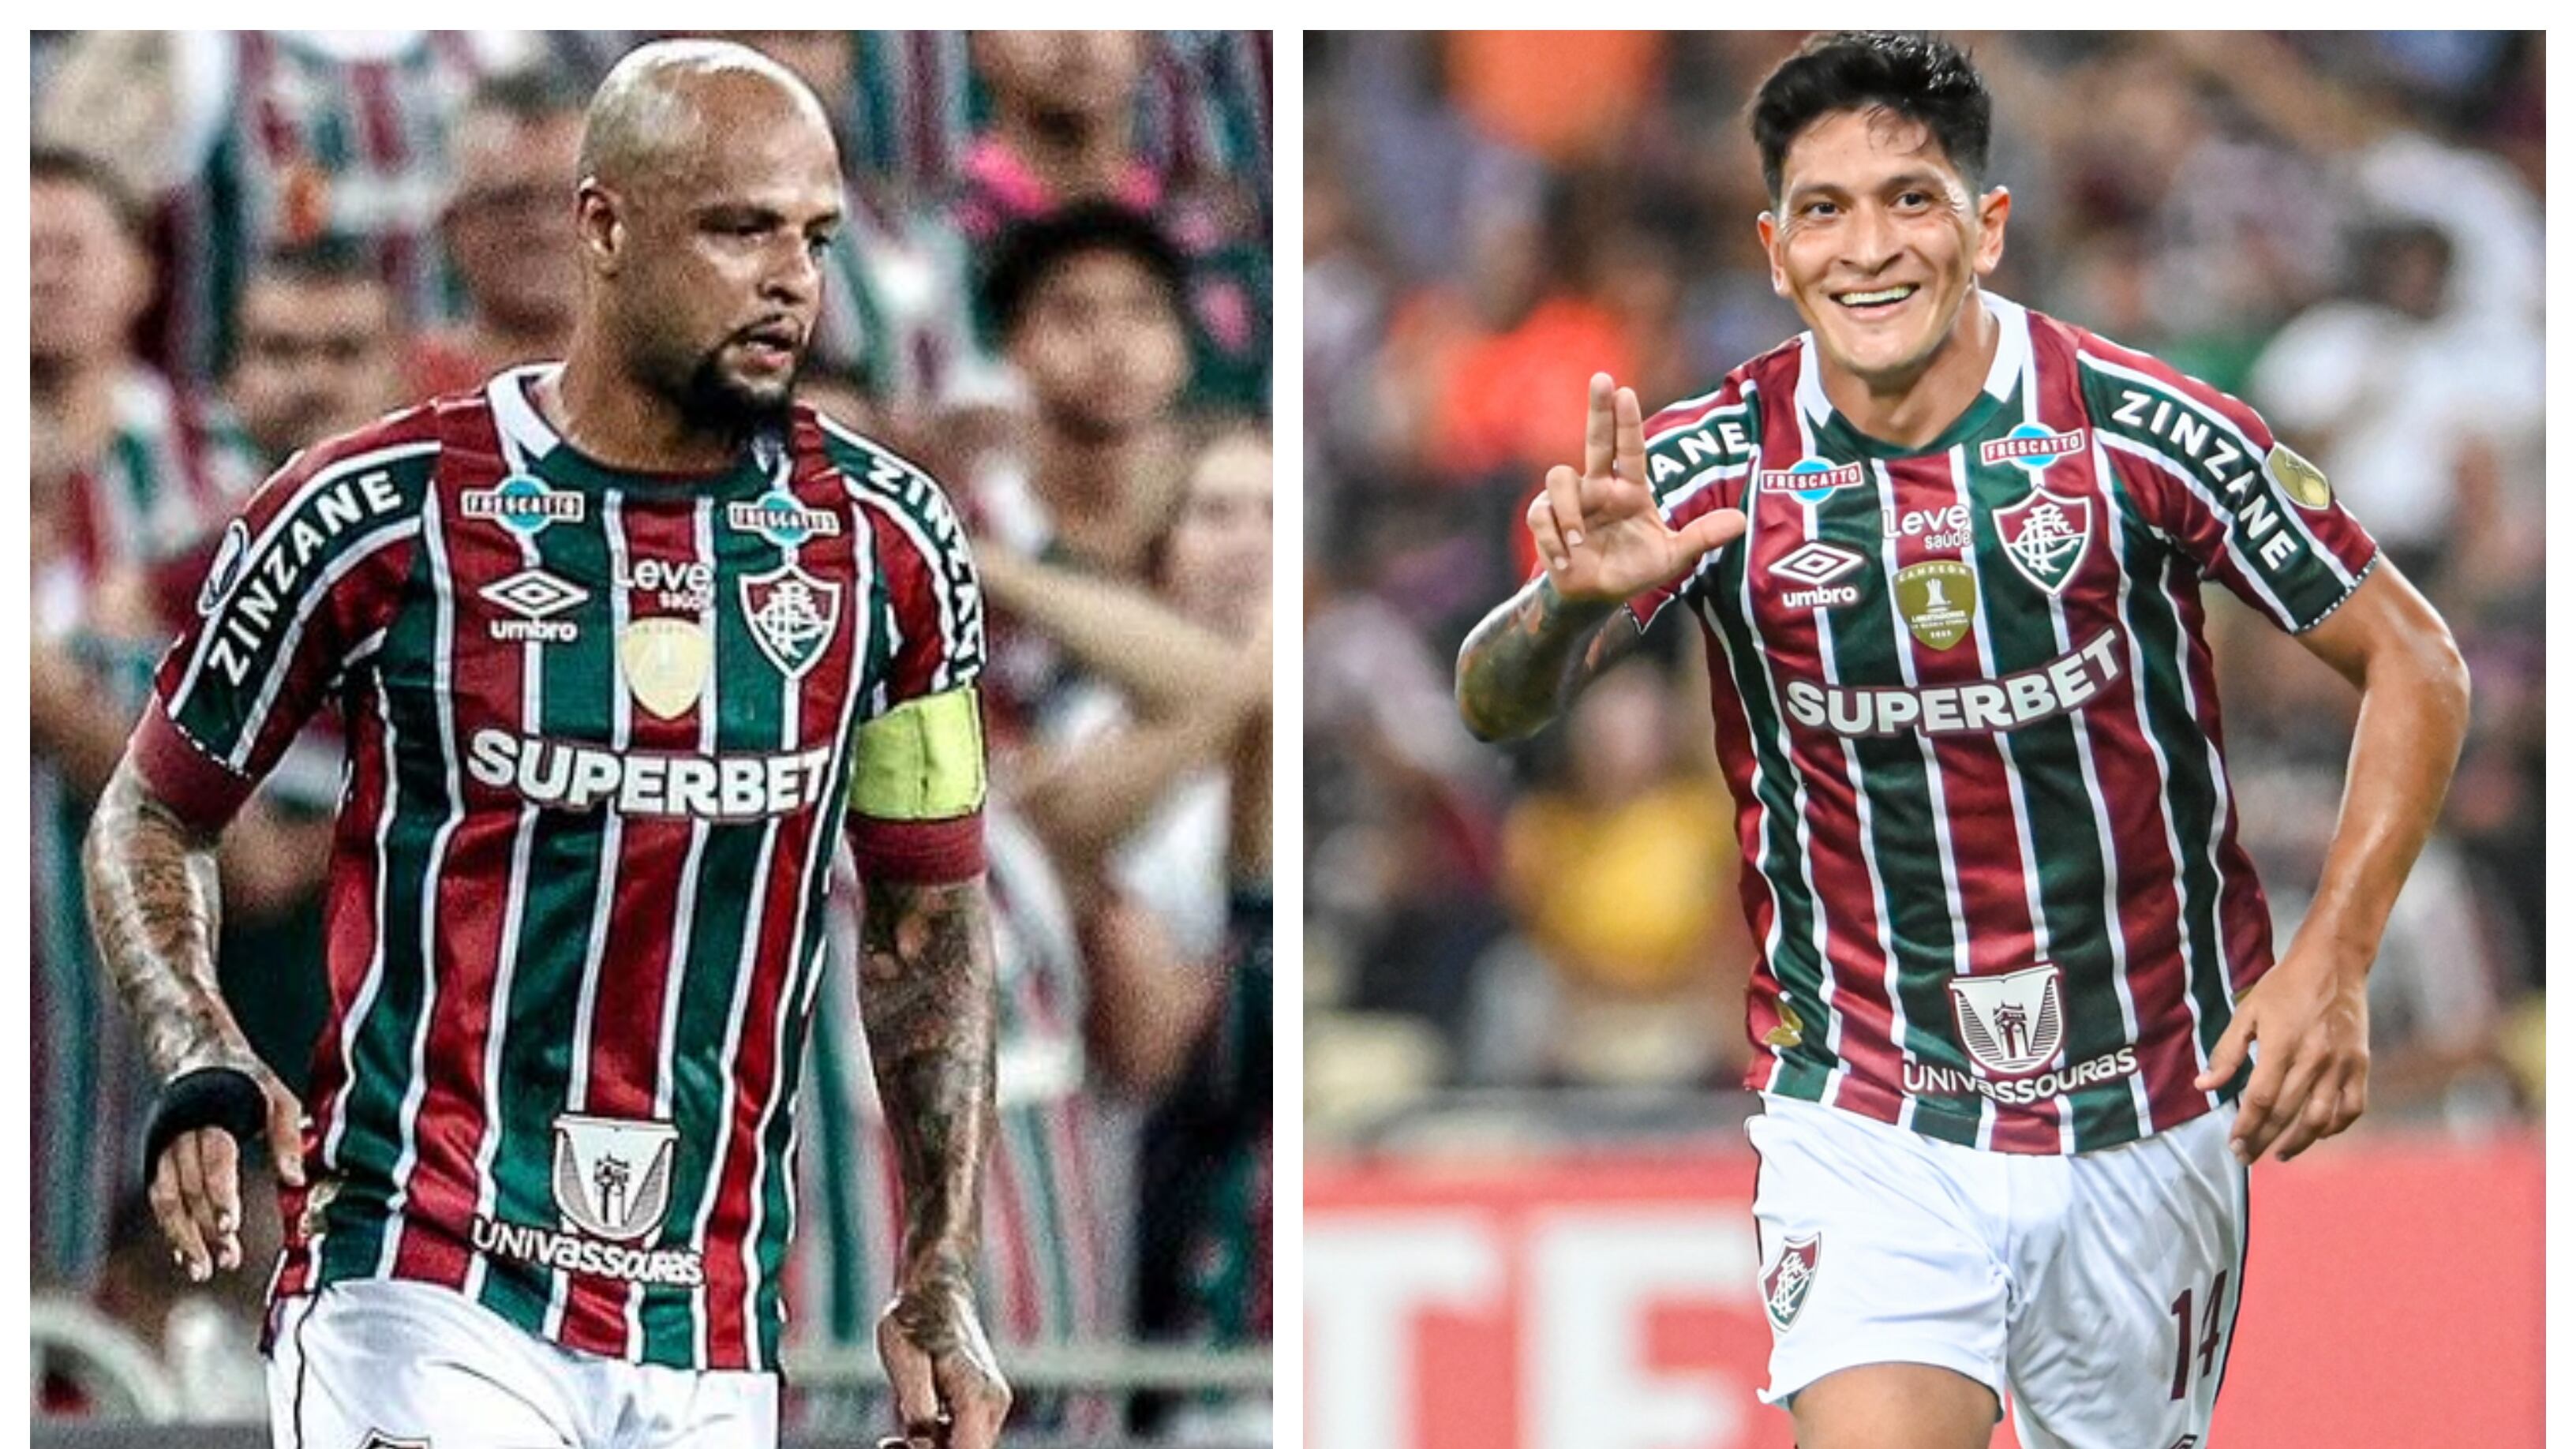 Aunque fueron las vencedores del encuentro de anoche frente a Colo Colo, los jugadores de Fluminense, Cano y Felipe Melo, destacaron el nivel del Cacique. "Es un grandísimo equipo", dijeron.